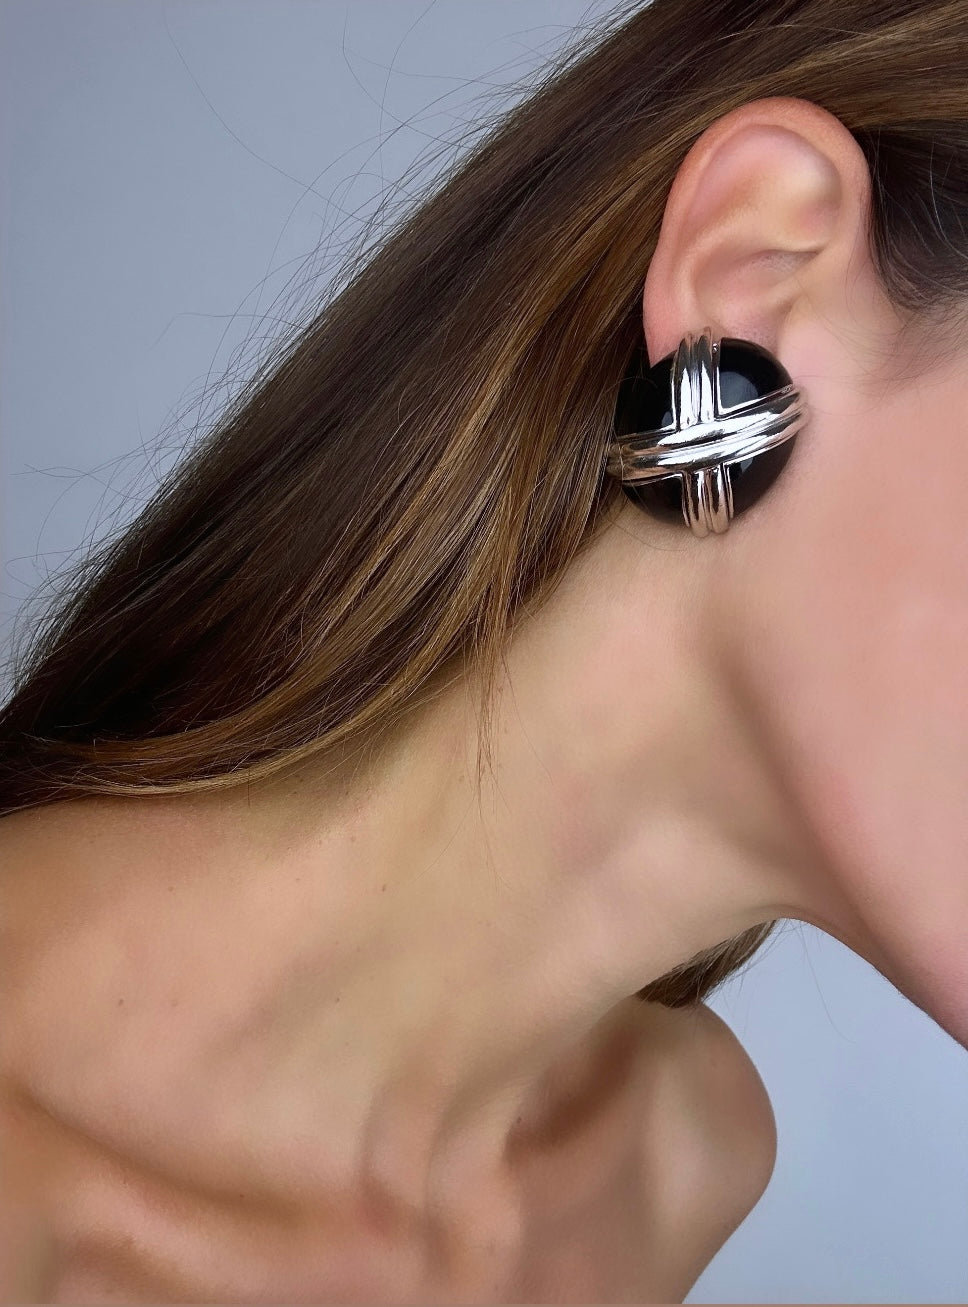 Oval earrings